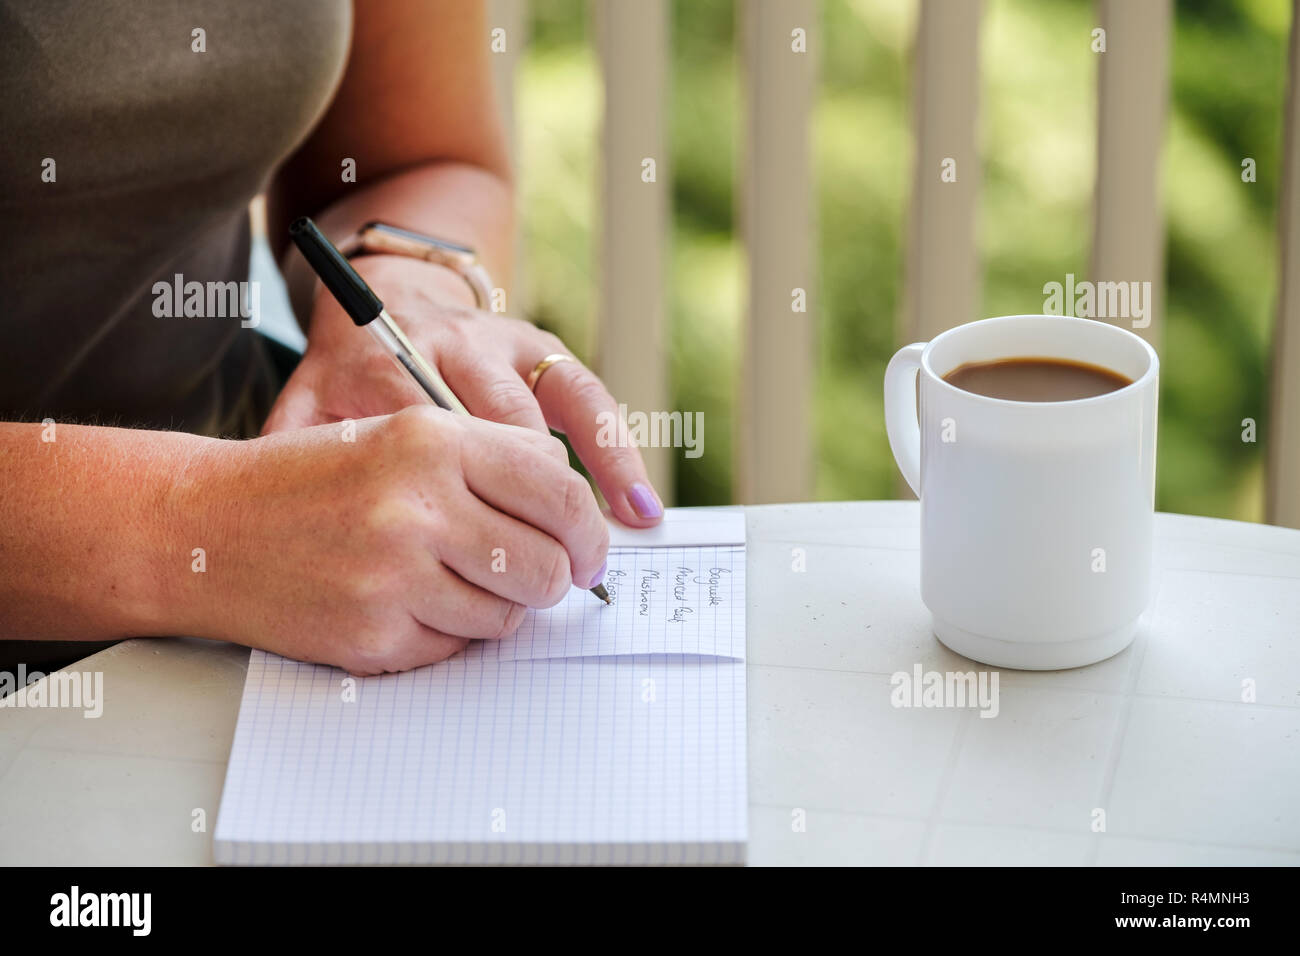 Une femme s'est assise à une table, avec une tasse de café, écrivant une liste d'achats avant de visiter le magasin pour obtenir de la nourriture et des provisions Banque D'Images